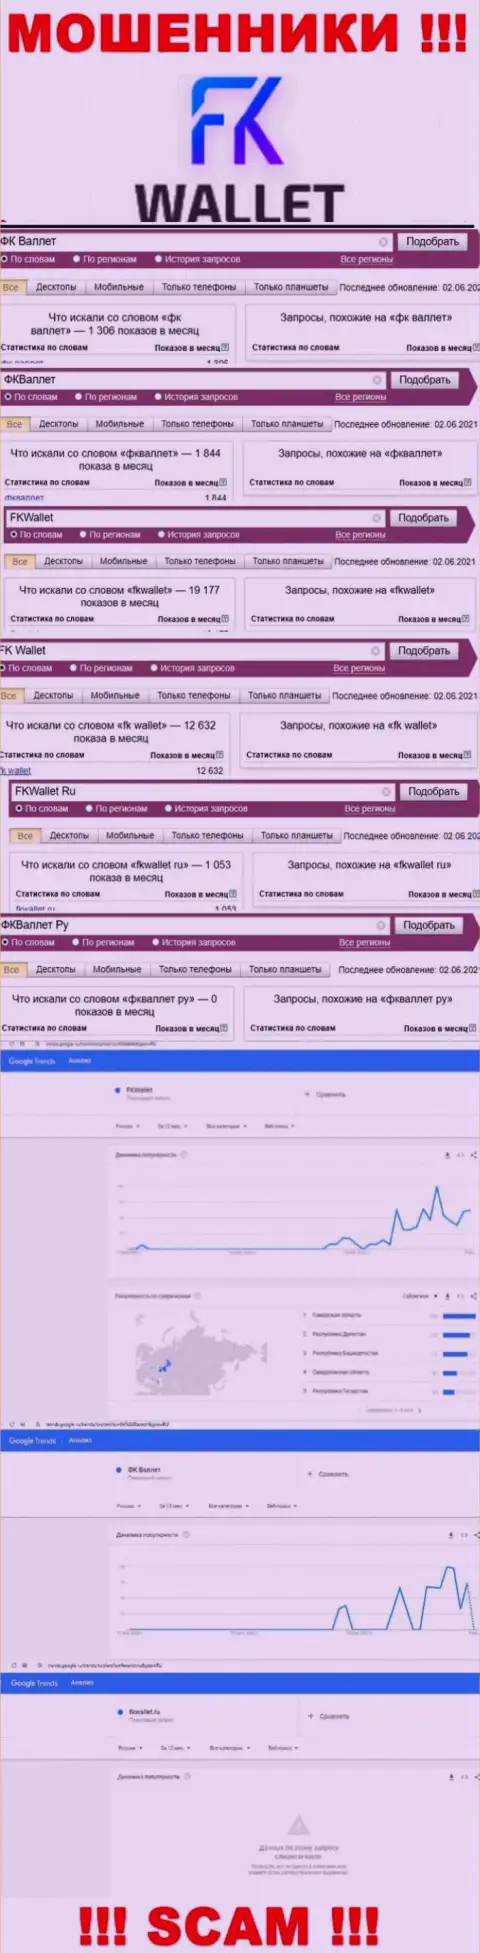 Скрин статистики онлайн запросов по незаконно действующей организации FKWallet